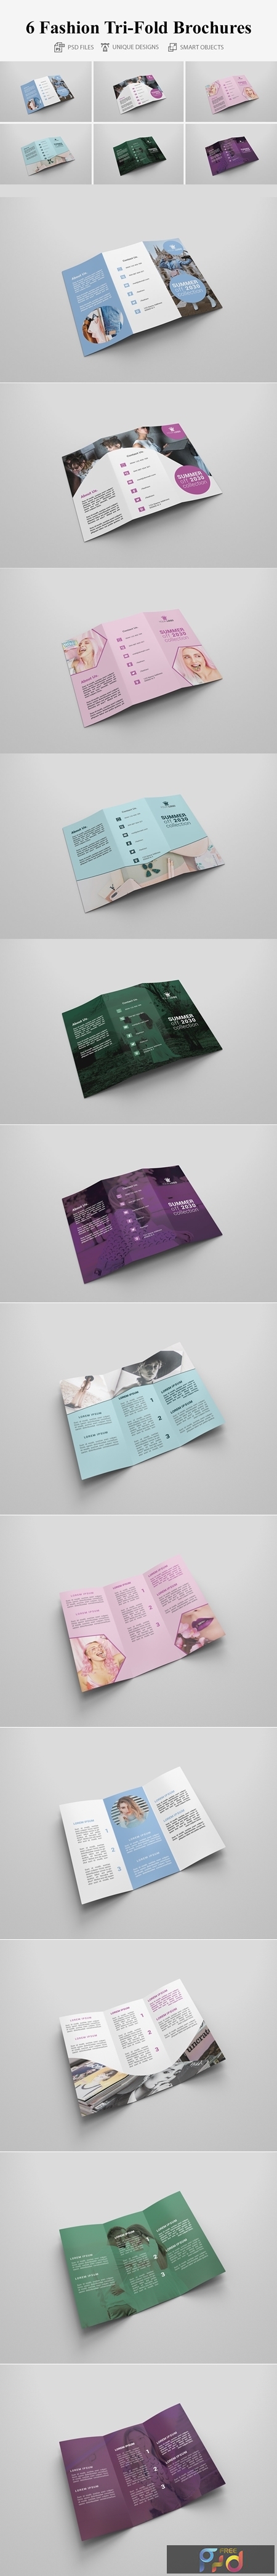 6 Fashion Tri-fold Brochures 4160669 1